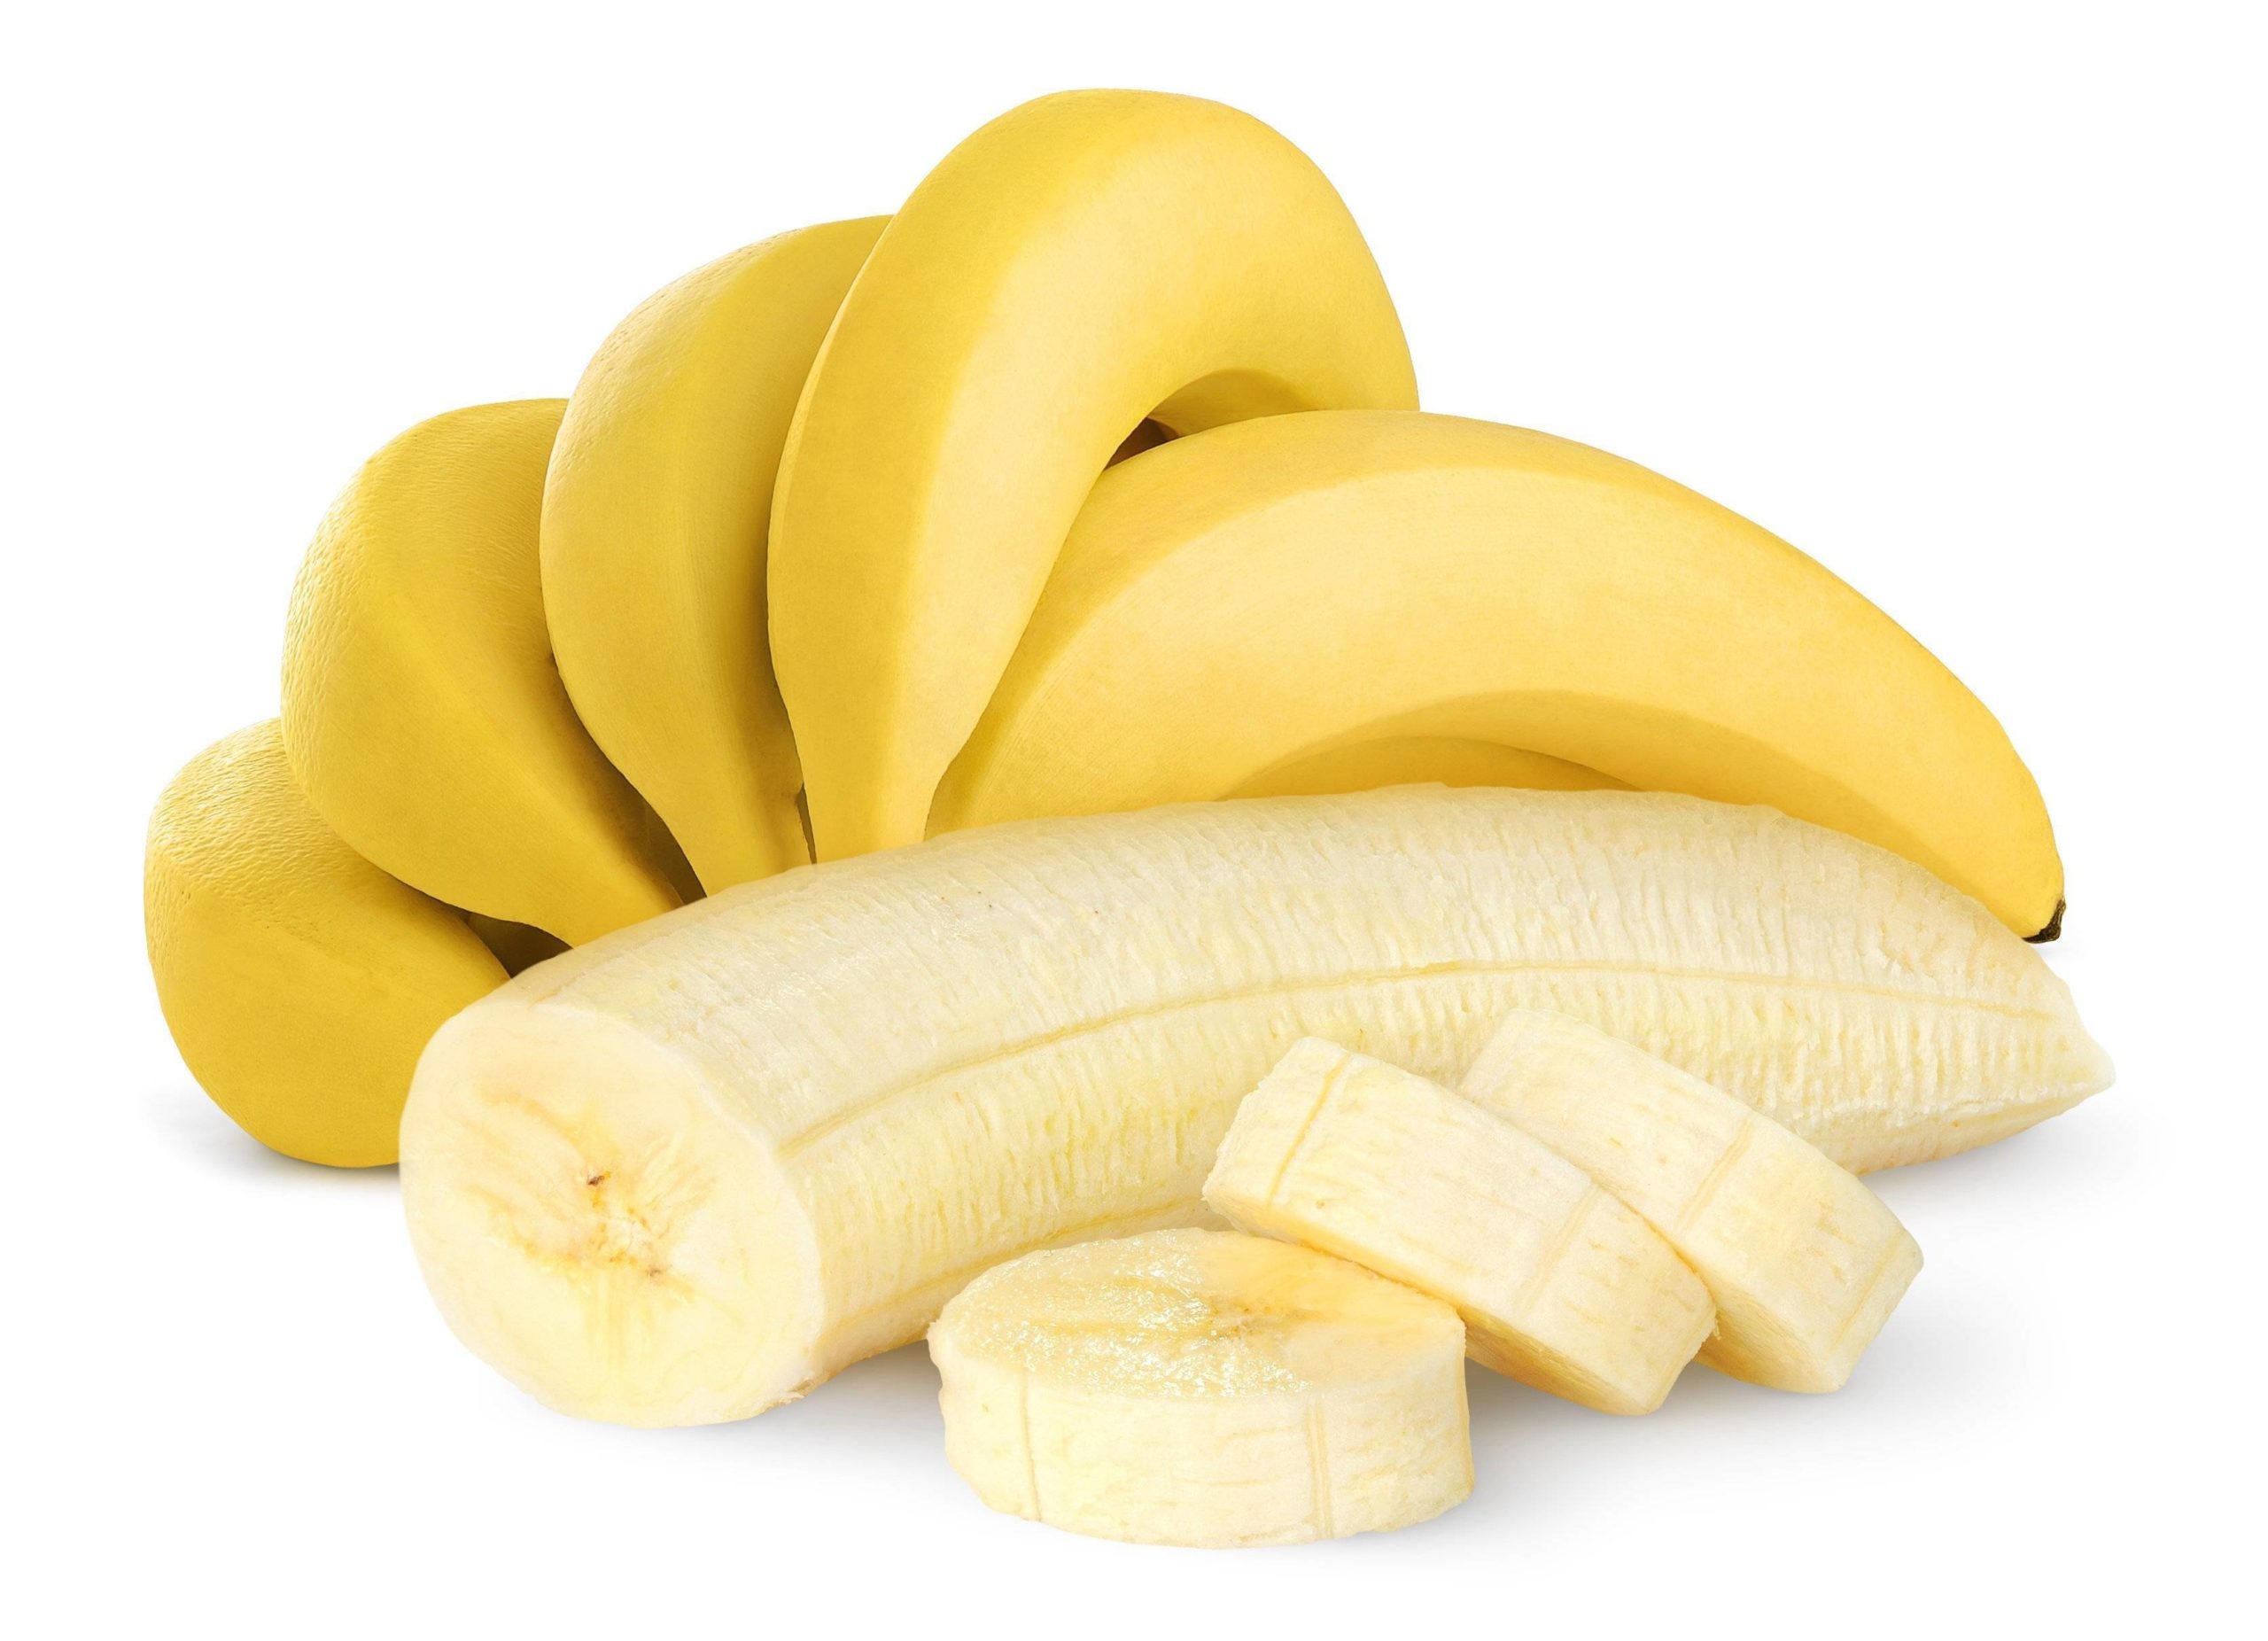 Mănâncă o banană înainte de culcare! Ai să dormi ca un prunc